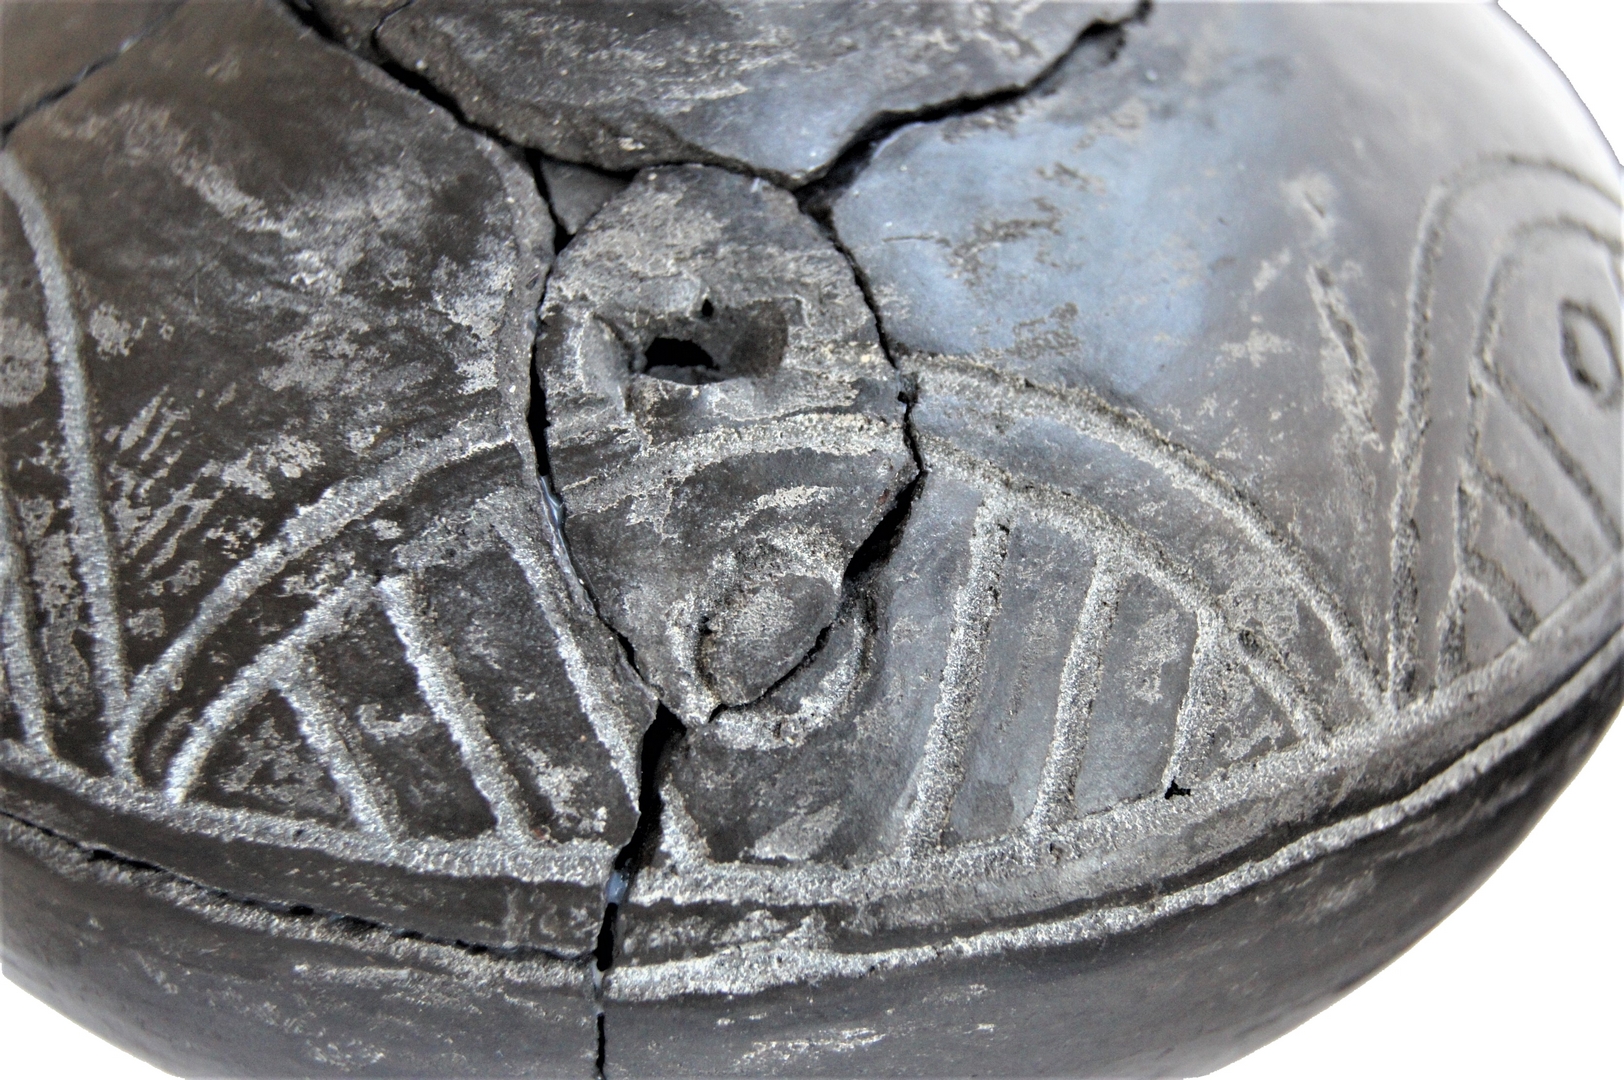 Na strychu znaleziono kawałki ceramiki. Po sklejeniu okazało się, że naczynie może mieć nawet tysiąc lat